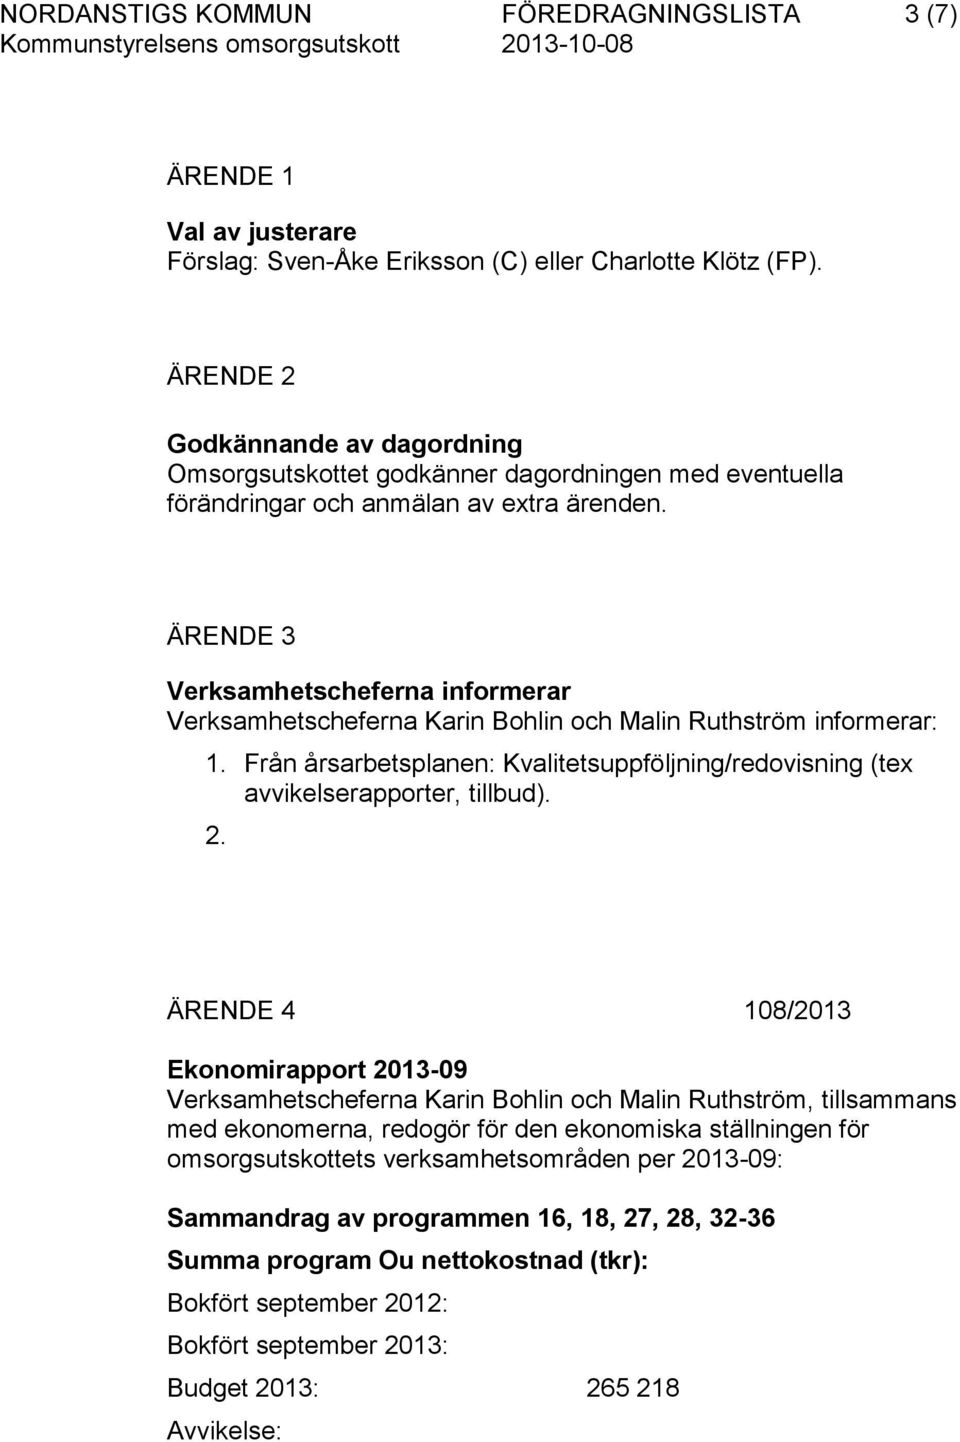 ÄRENDE 3 Verksamhetscheferna informerar Verksamhetscheferna Karin Bohlin och Malin Ruthström informerar: 1. Från årsarbetsplanen: Kvalitetsuppföljning/redovisning (tex avvikelserapporter, tillbud). 2.